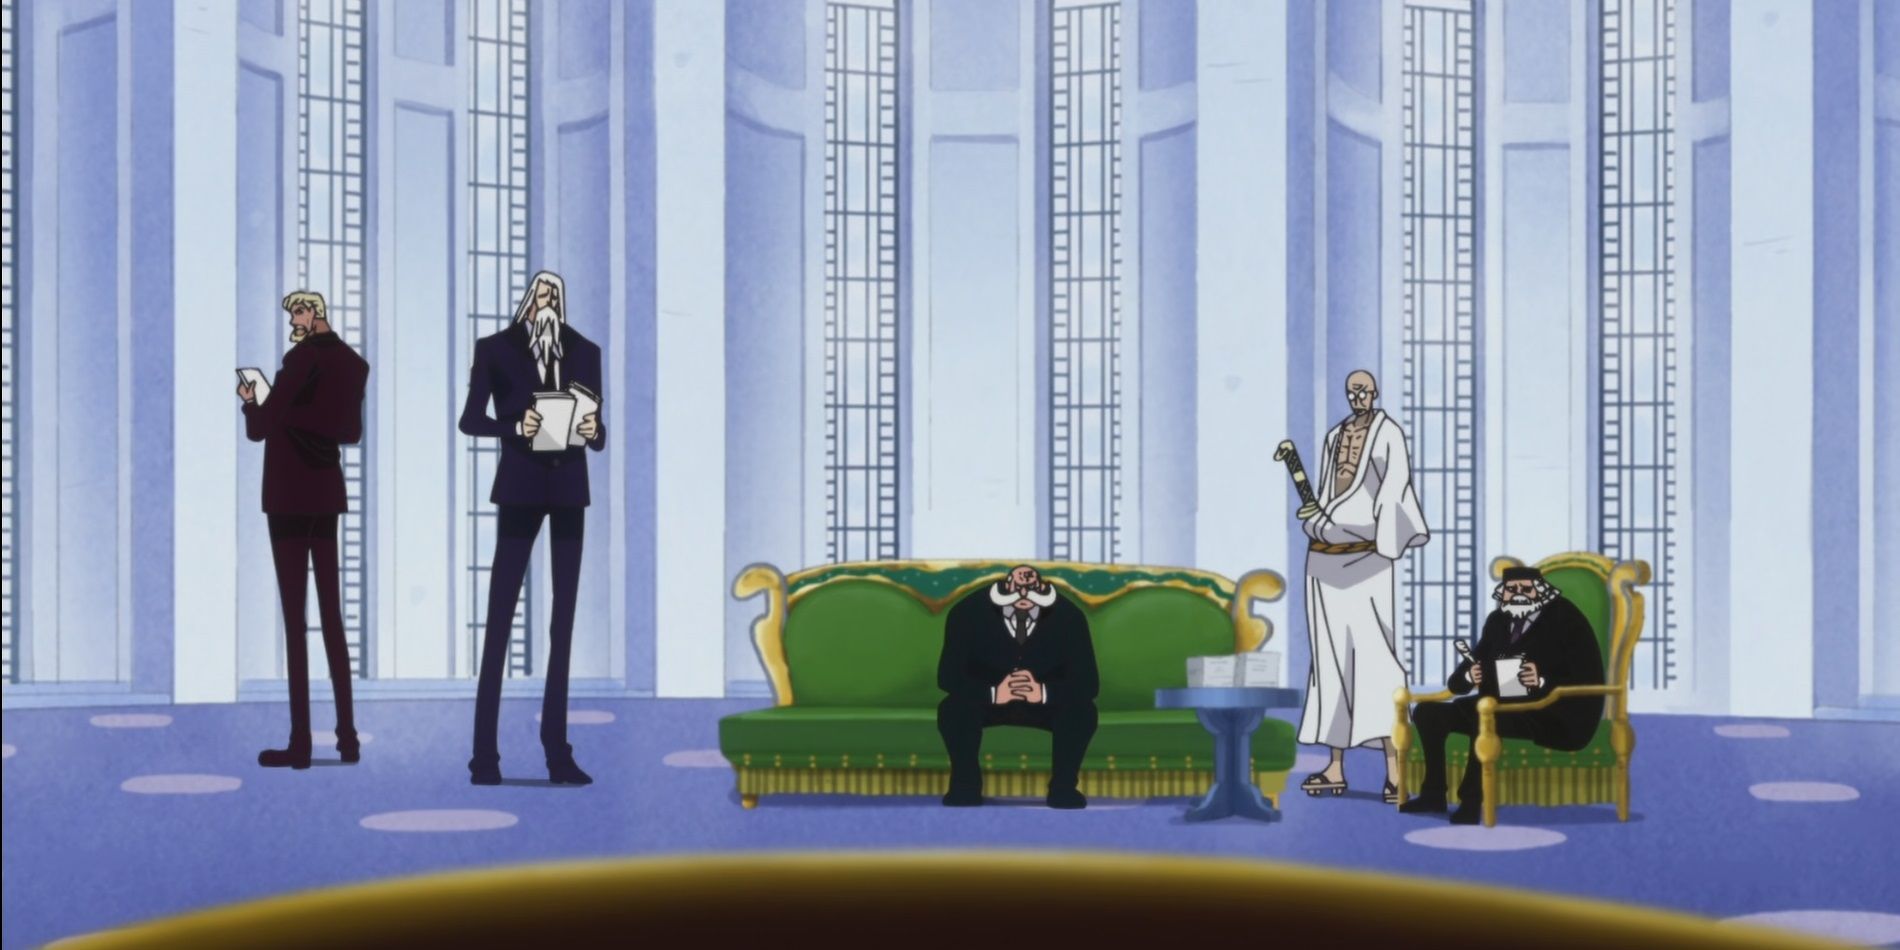 One Piece's Five Elders meet with Shanks.